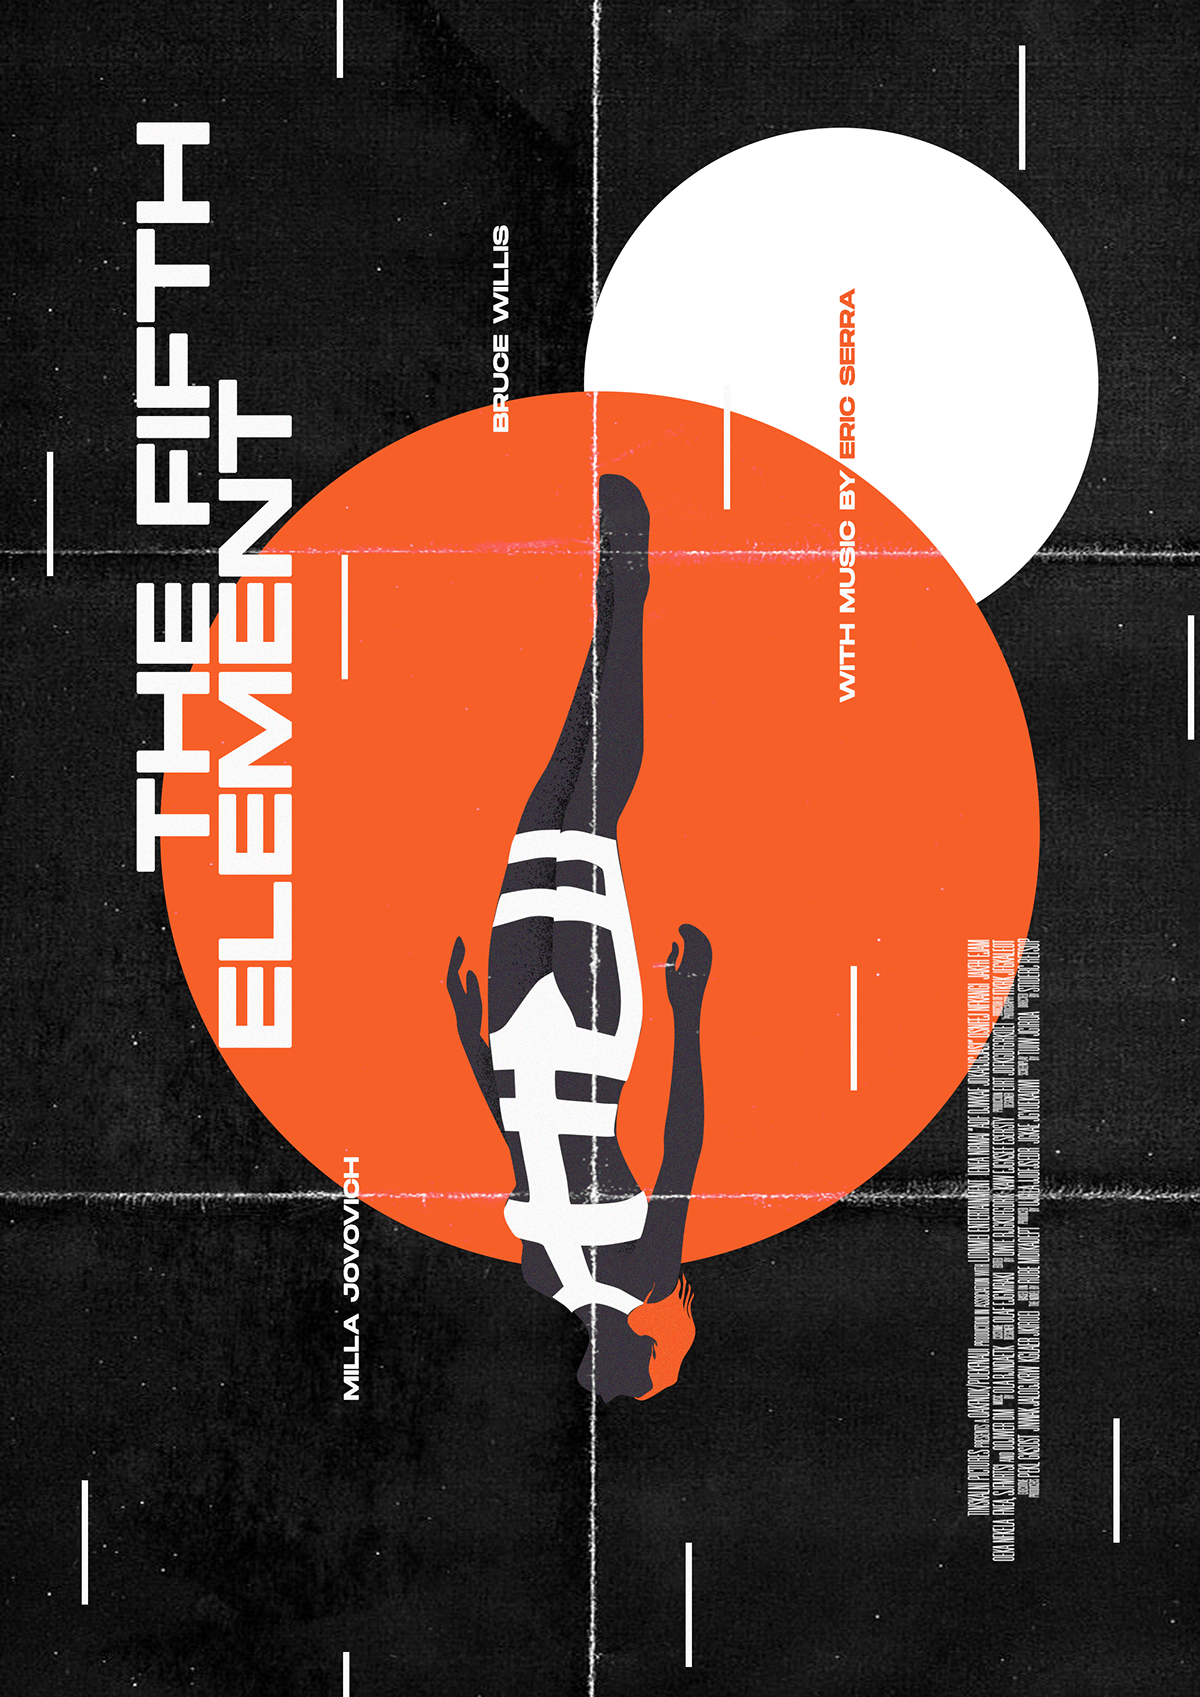 Eric serra graphic design  Jean Reno leon the professional luc besson Poster Design the big blue the fifth element